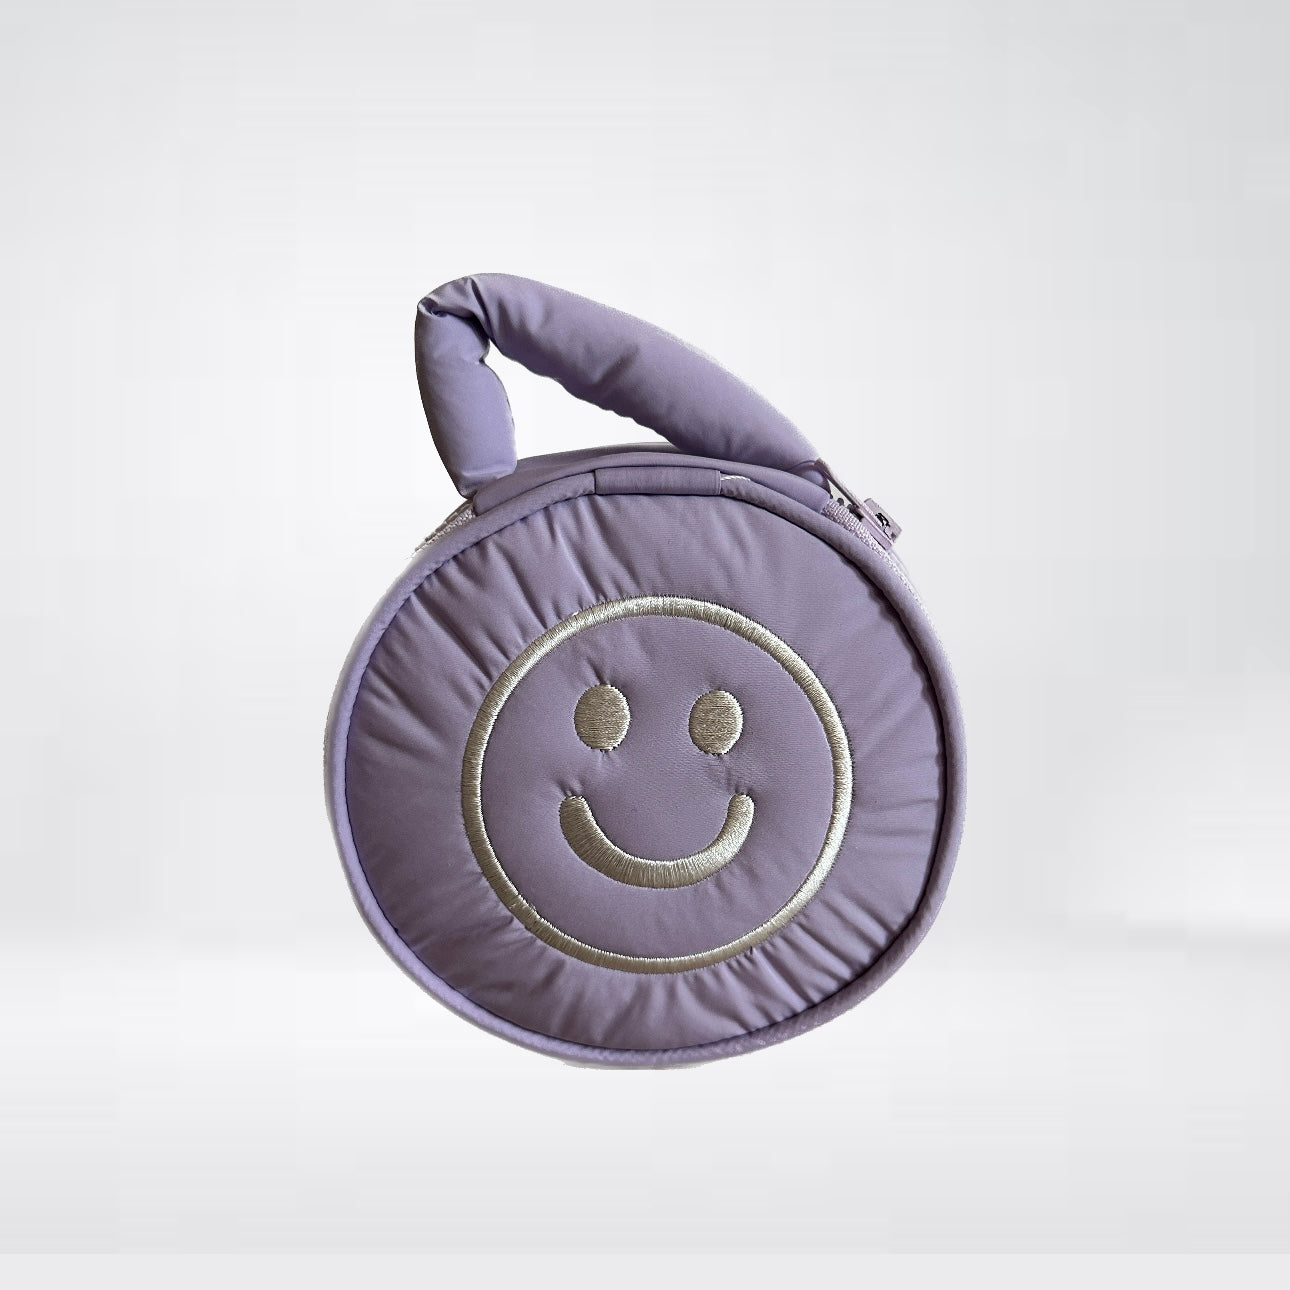 Tasche "Cases" in flieder mit Smiley-Stickerei für Kabel